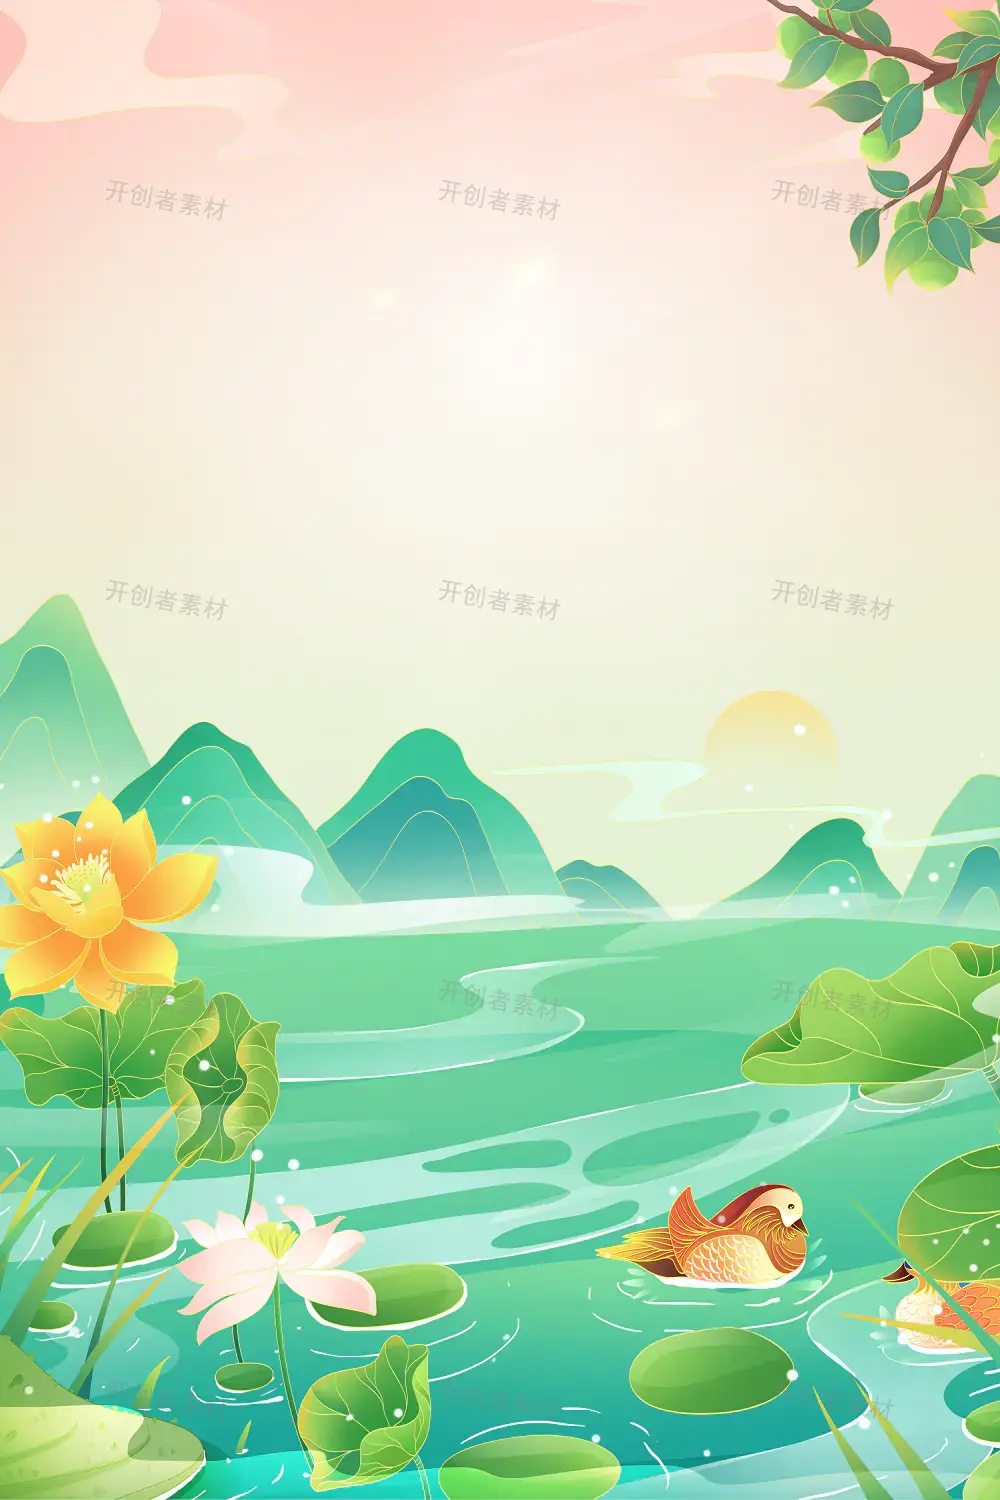 夏日中国风手绘宣传海报设计素材